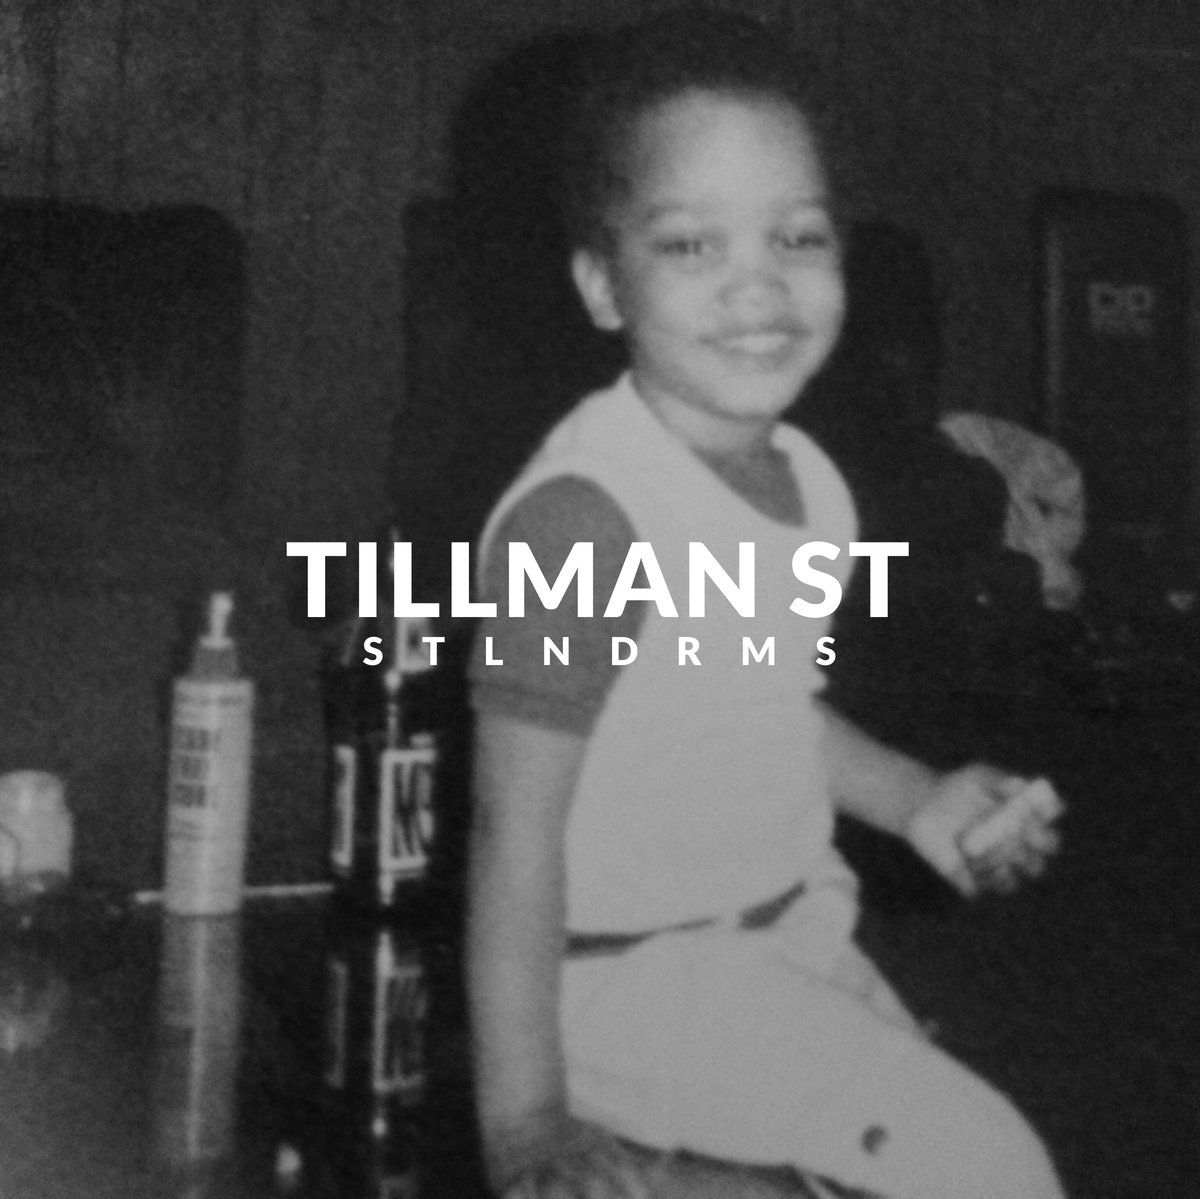 STLNDRMS - "TILLMAN ST" (Release)